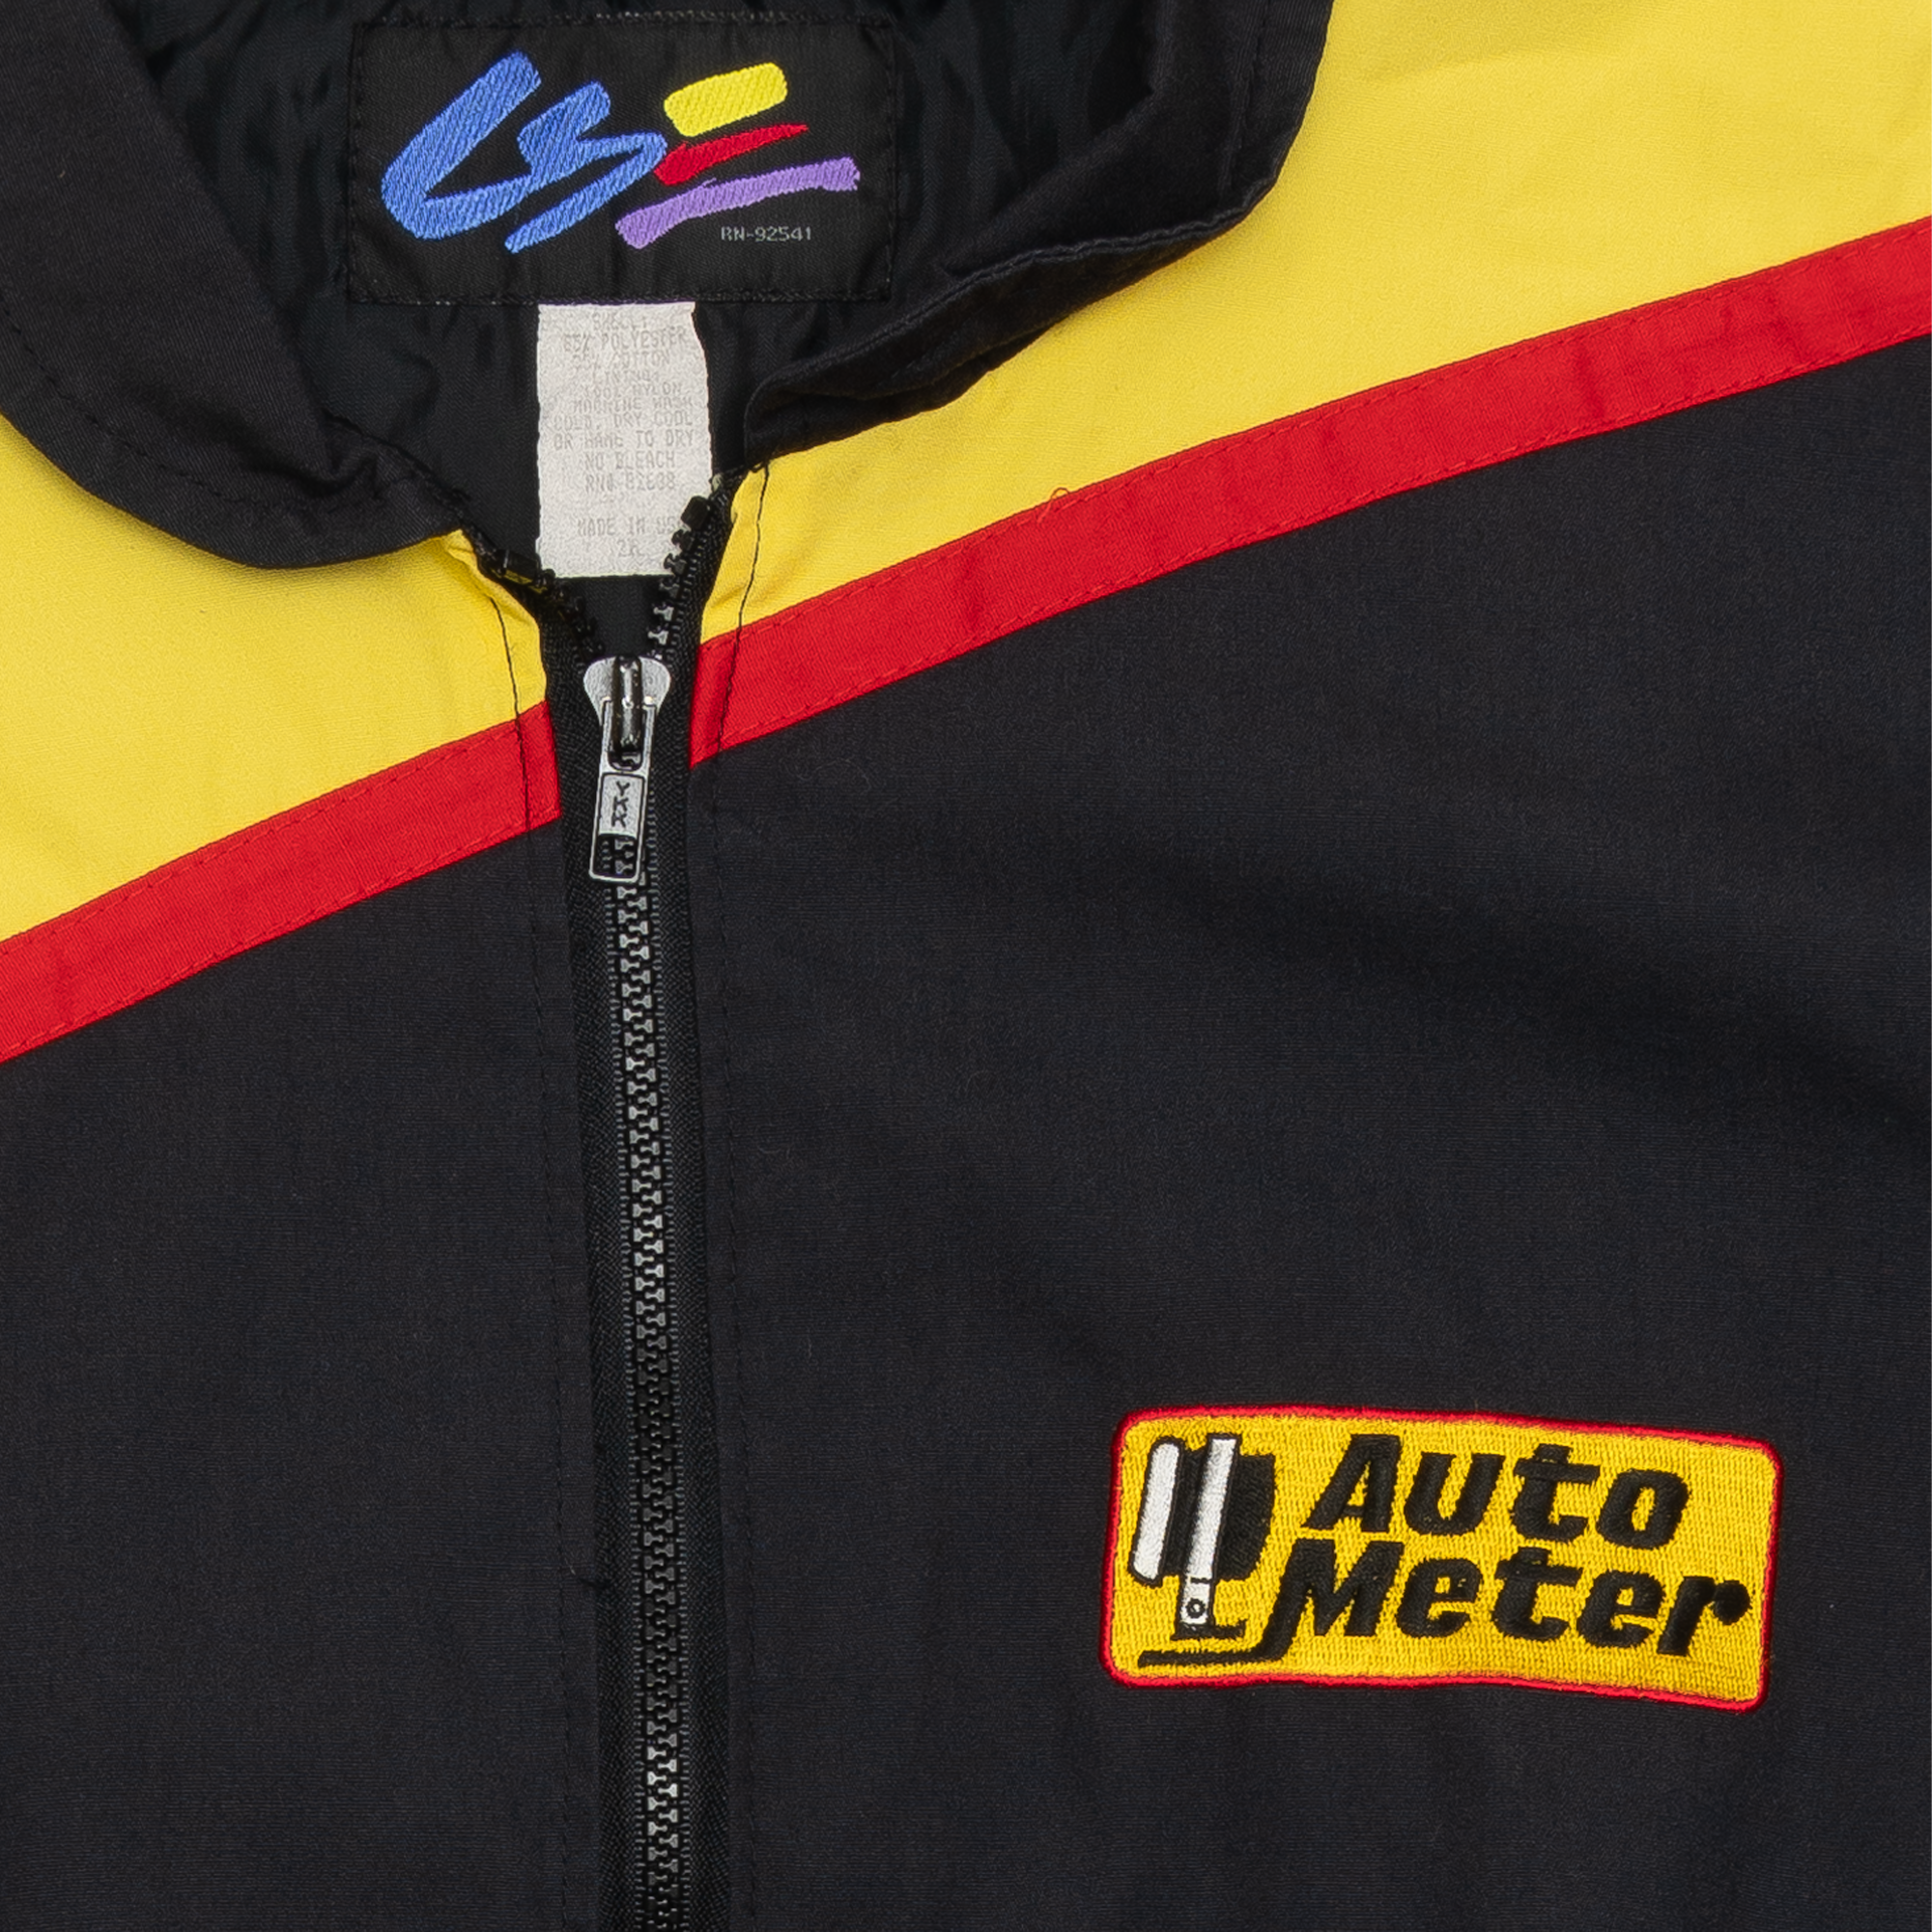 Auto Meter Racing Jacket Black-PLUS